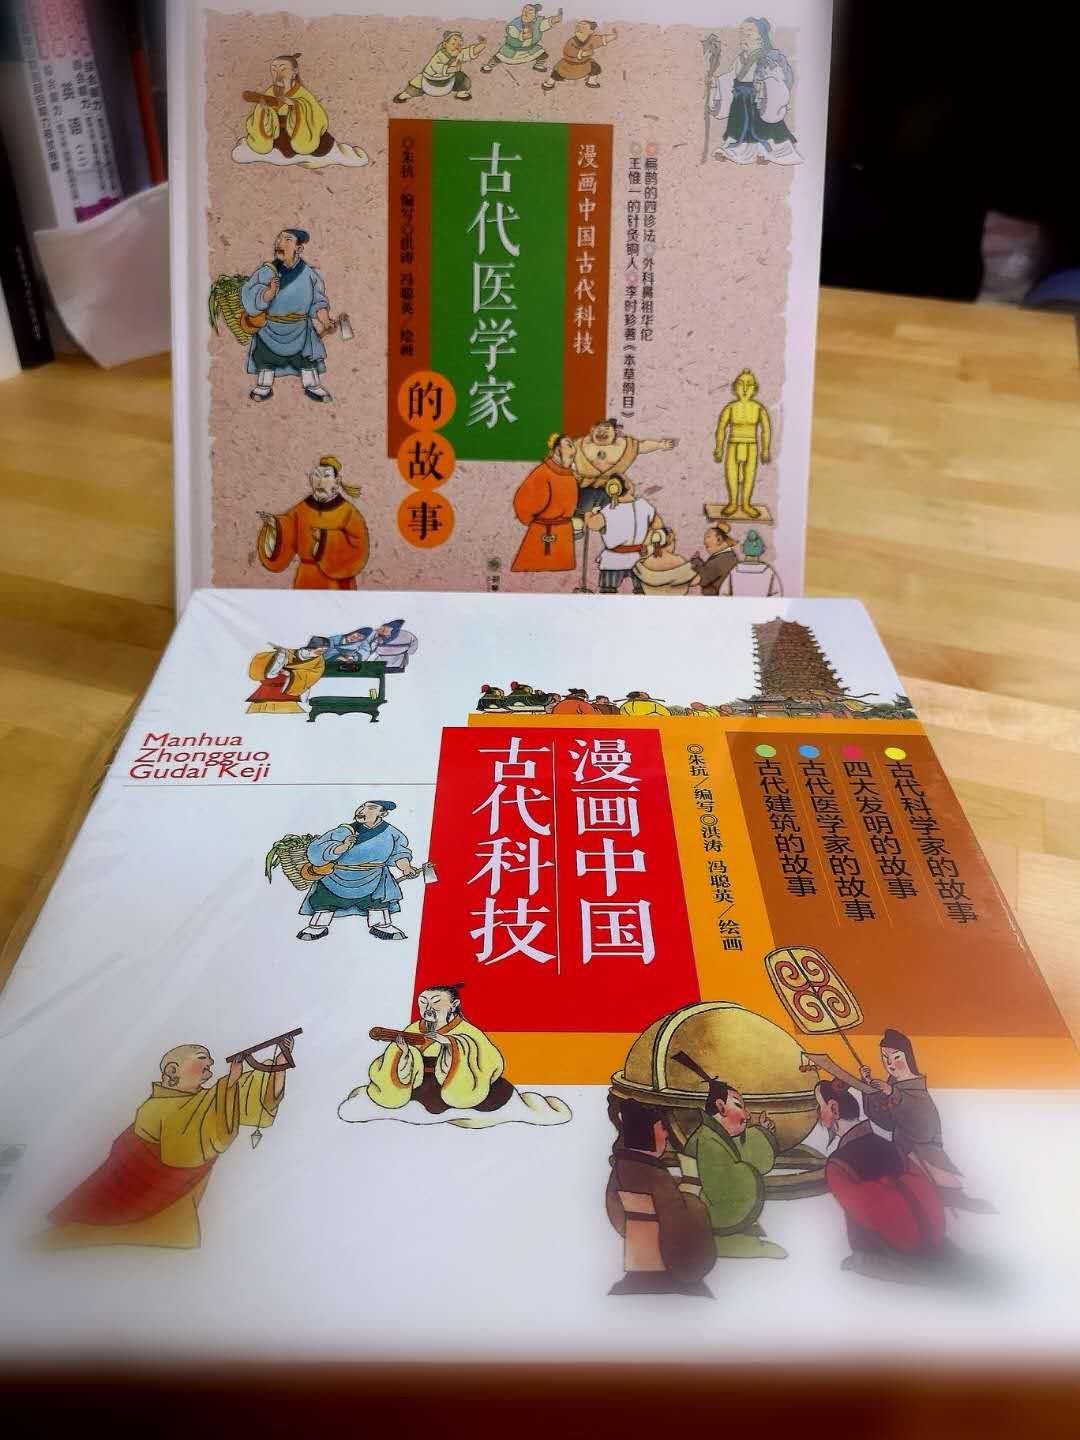 用漫画的形式讲述中国传统文化，寓教于乐，漫画灵动有趣，文字易于孩子理解。儿子特别喜欢，买回来之后自己看了好多遍，通过看书学习到了关于中国古代有趣的故事，还愿意将书中的故事绘声绘色的讲出来，特别推荐。是不可多得的儿童读物佳作。